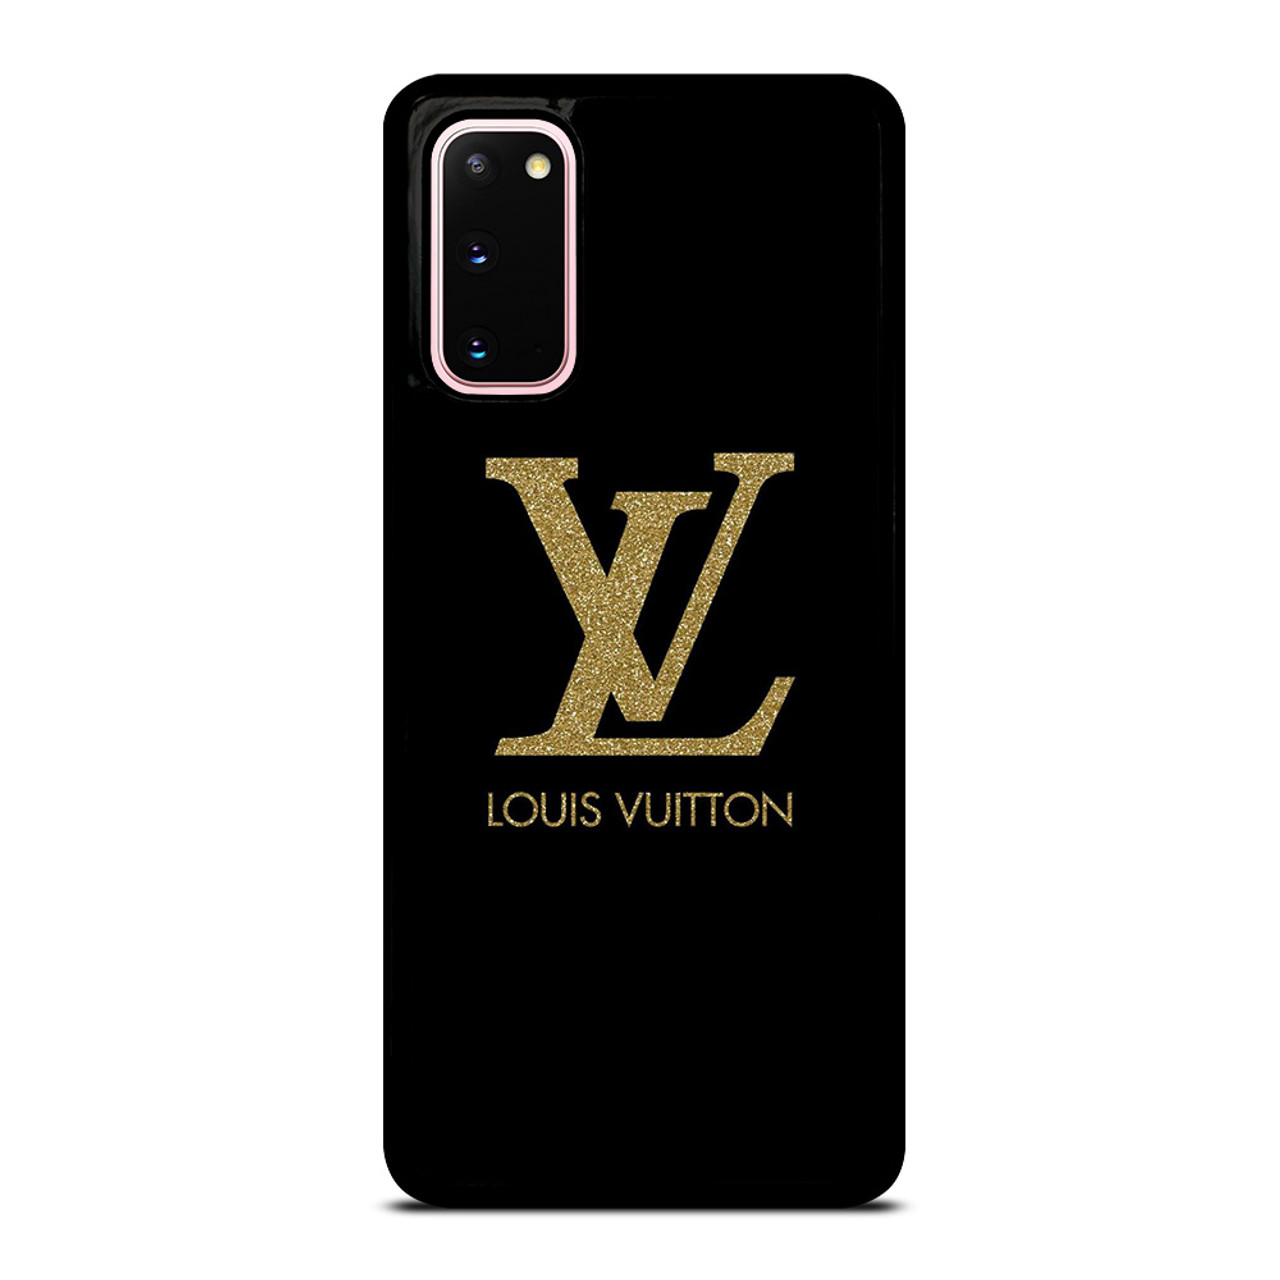 LOUIS VUITTON LV LOGO BLACK GOLD Samsung Galaxy S20 Case Cover